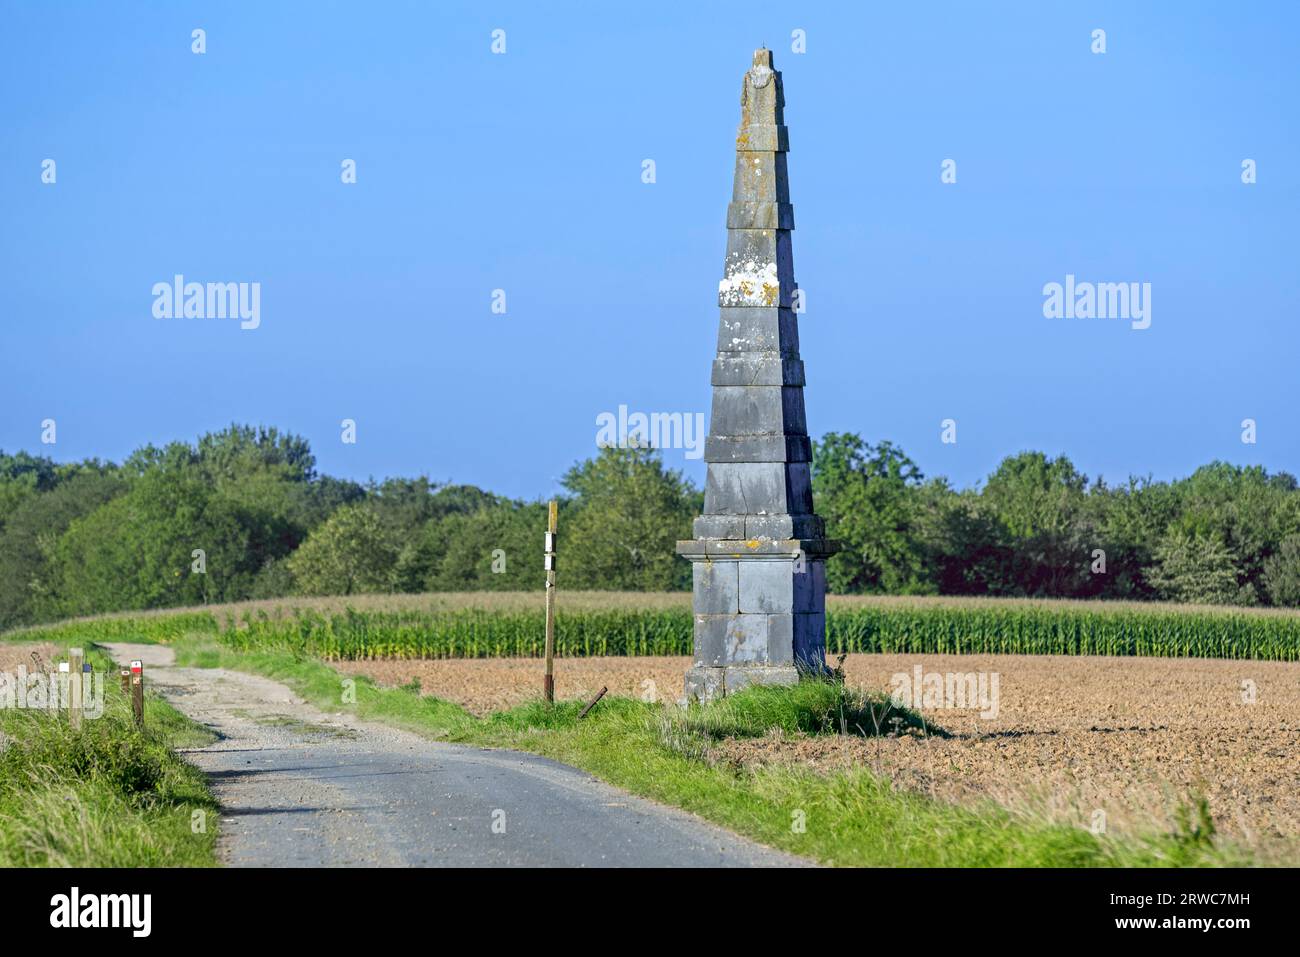 Pirámide del siglo XIX de Verlée, obelisco sin marcar, hito de la era napoleónica en los campos cerca de Havelange, provincia de Namur, Valonia, Bélgica Foto de stock